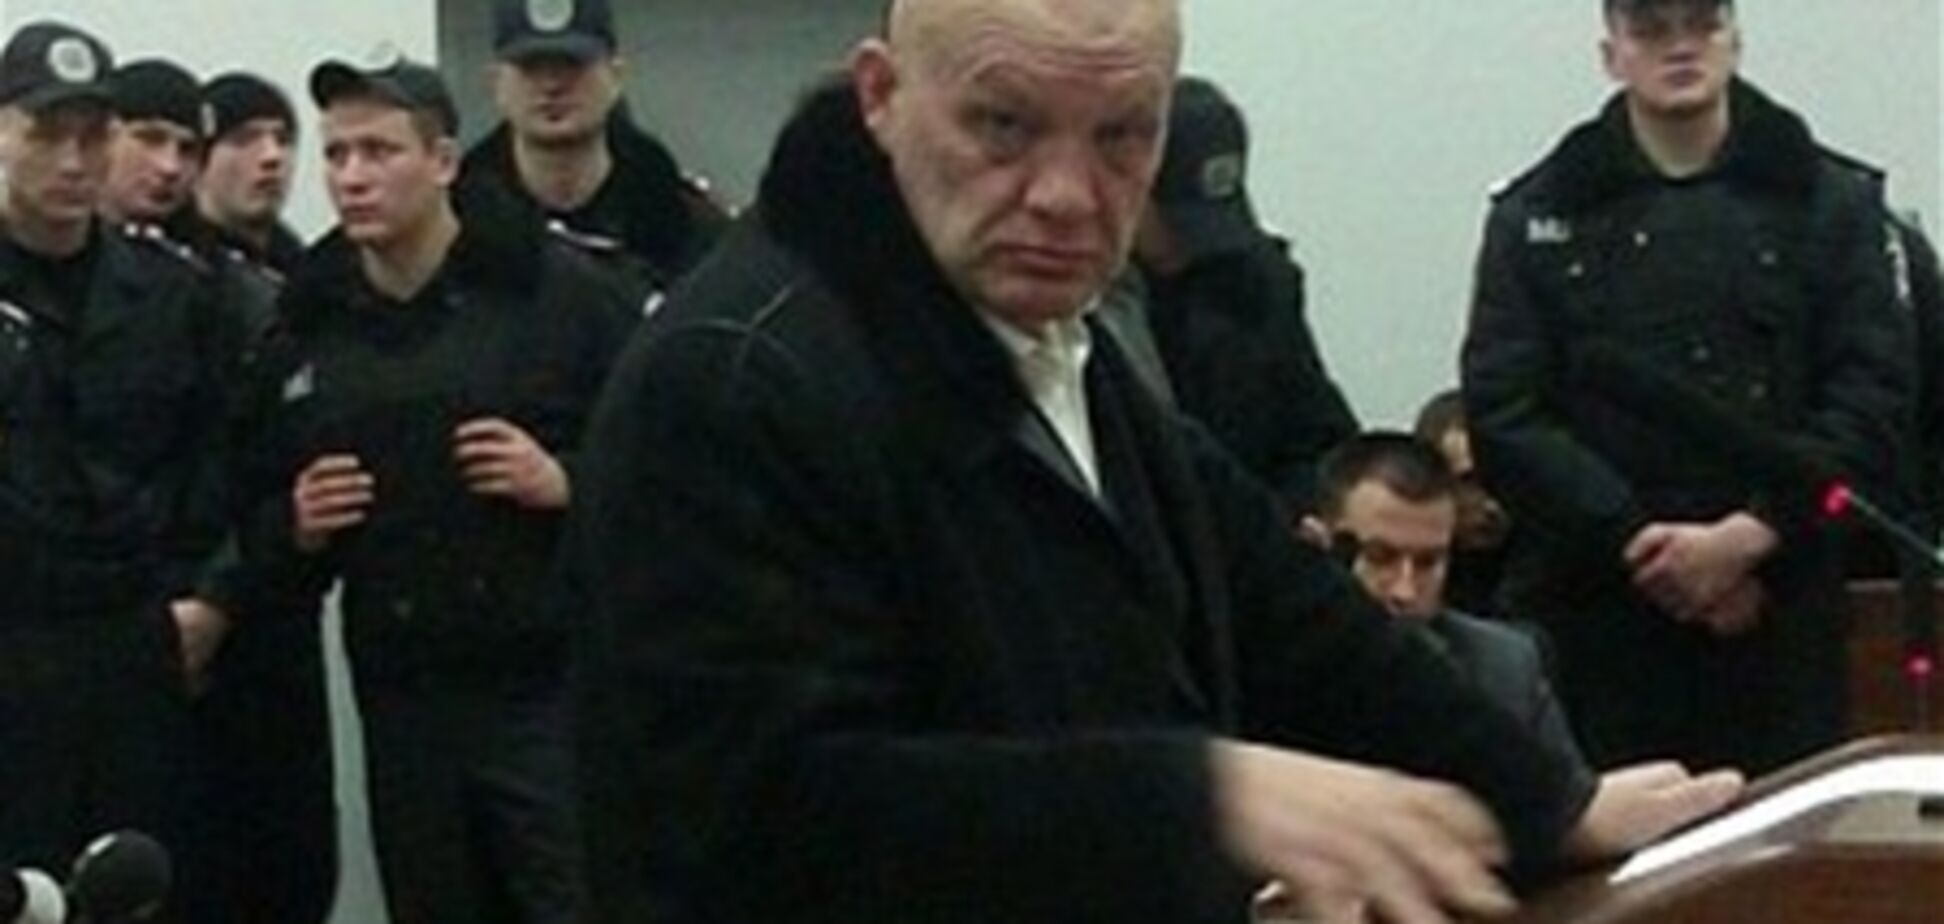 Щербаня 'заказал' Лазаренко в интересах Тимошенко - свидетель